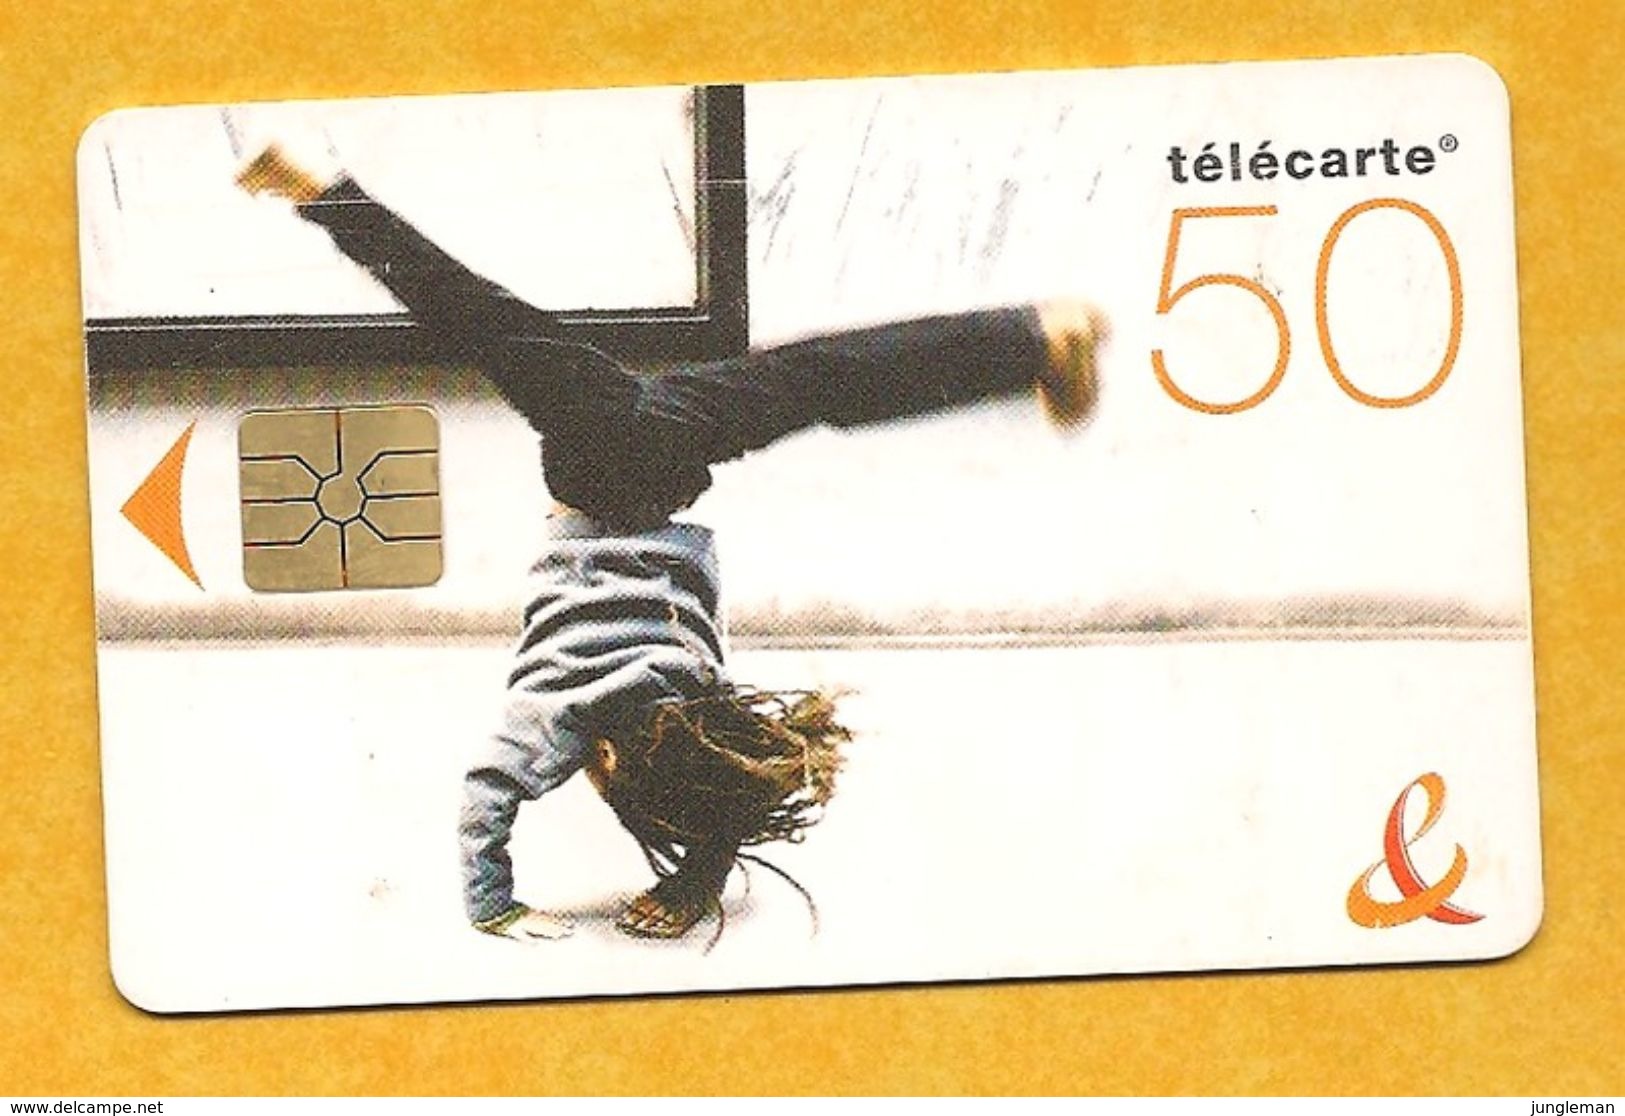 Télécarte 50 Unités - Jeune Acrobate - 2006 - 2006